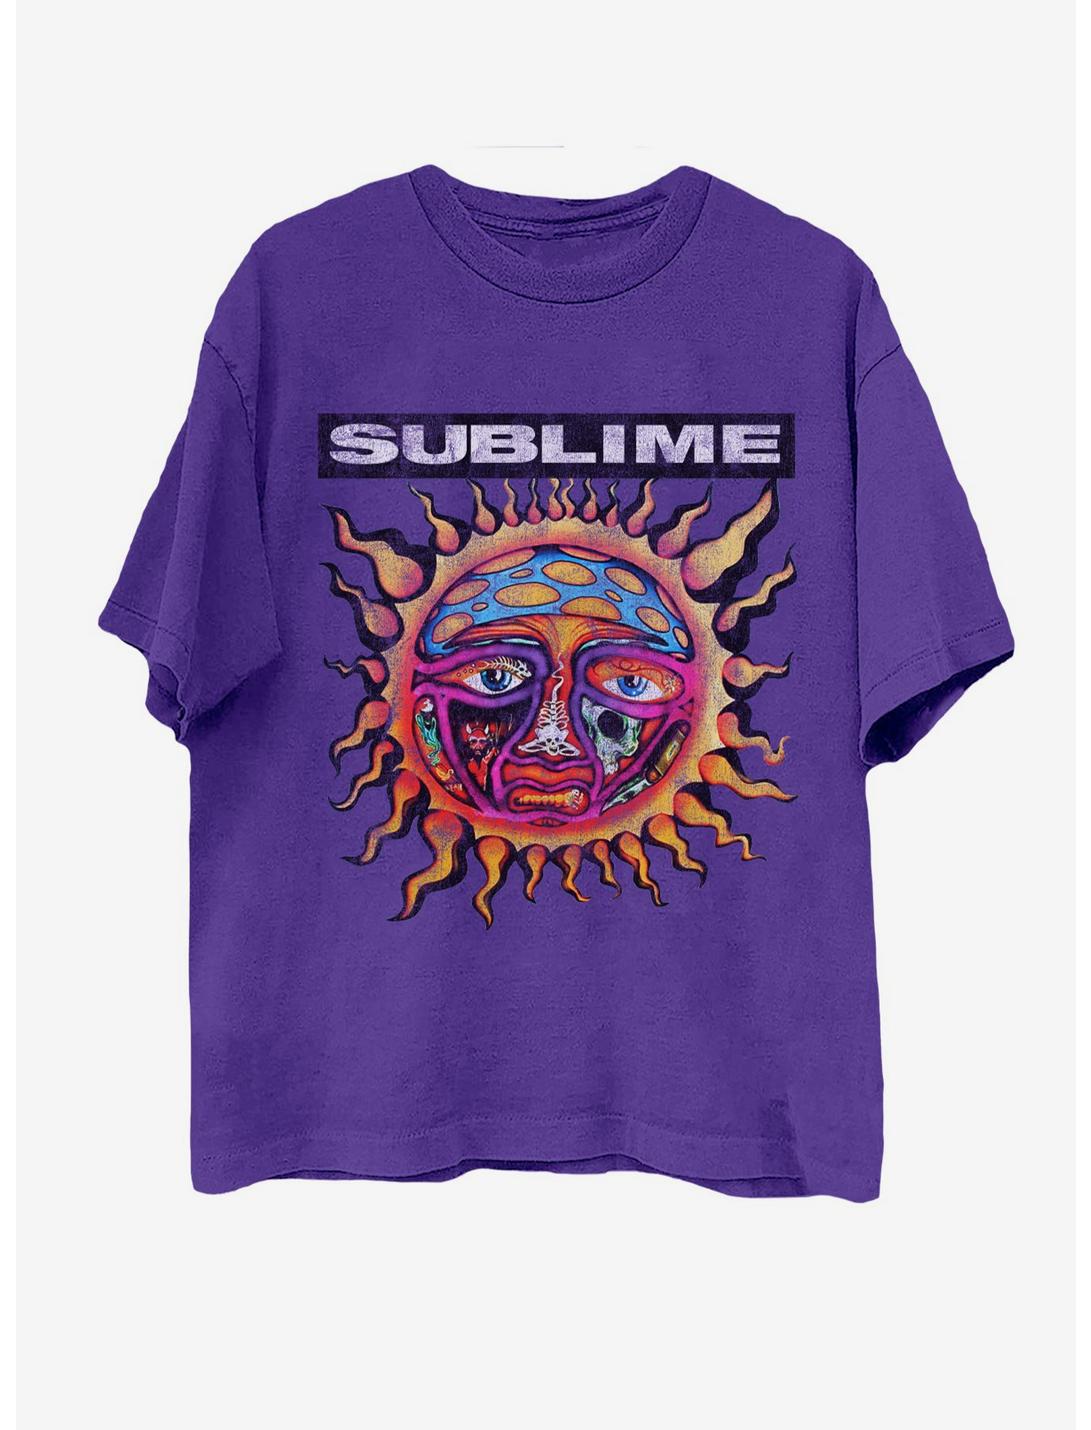 Sublime Logo Purple Boyfriend Fit Girls T-Shirt, PURPLE, hi-res